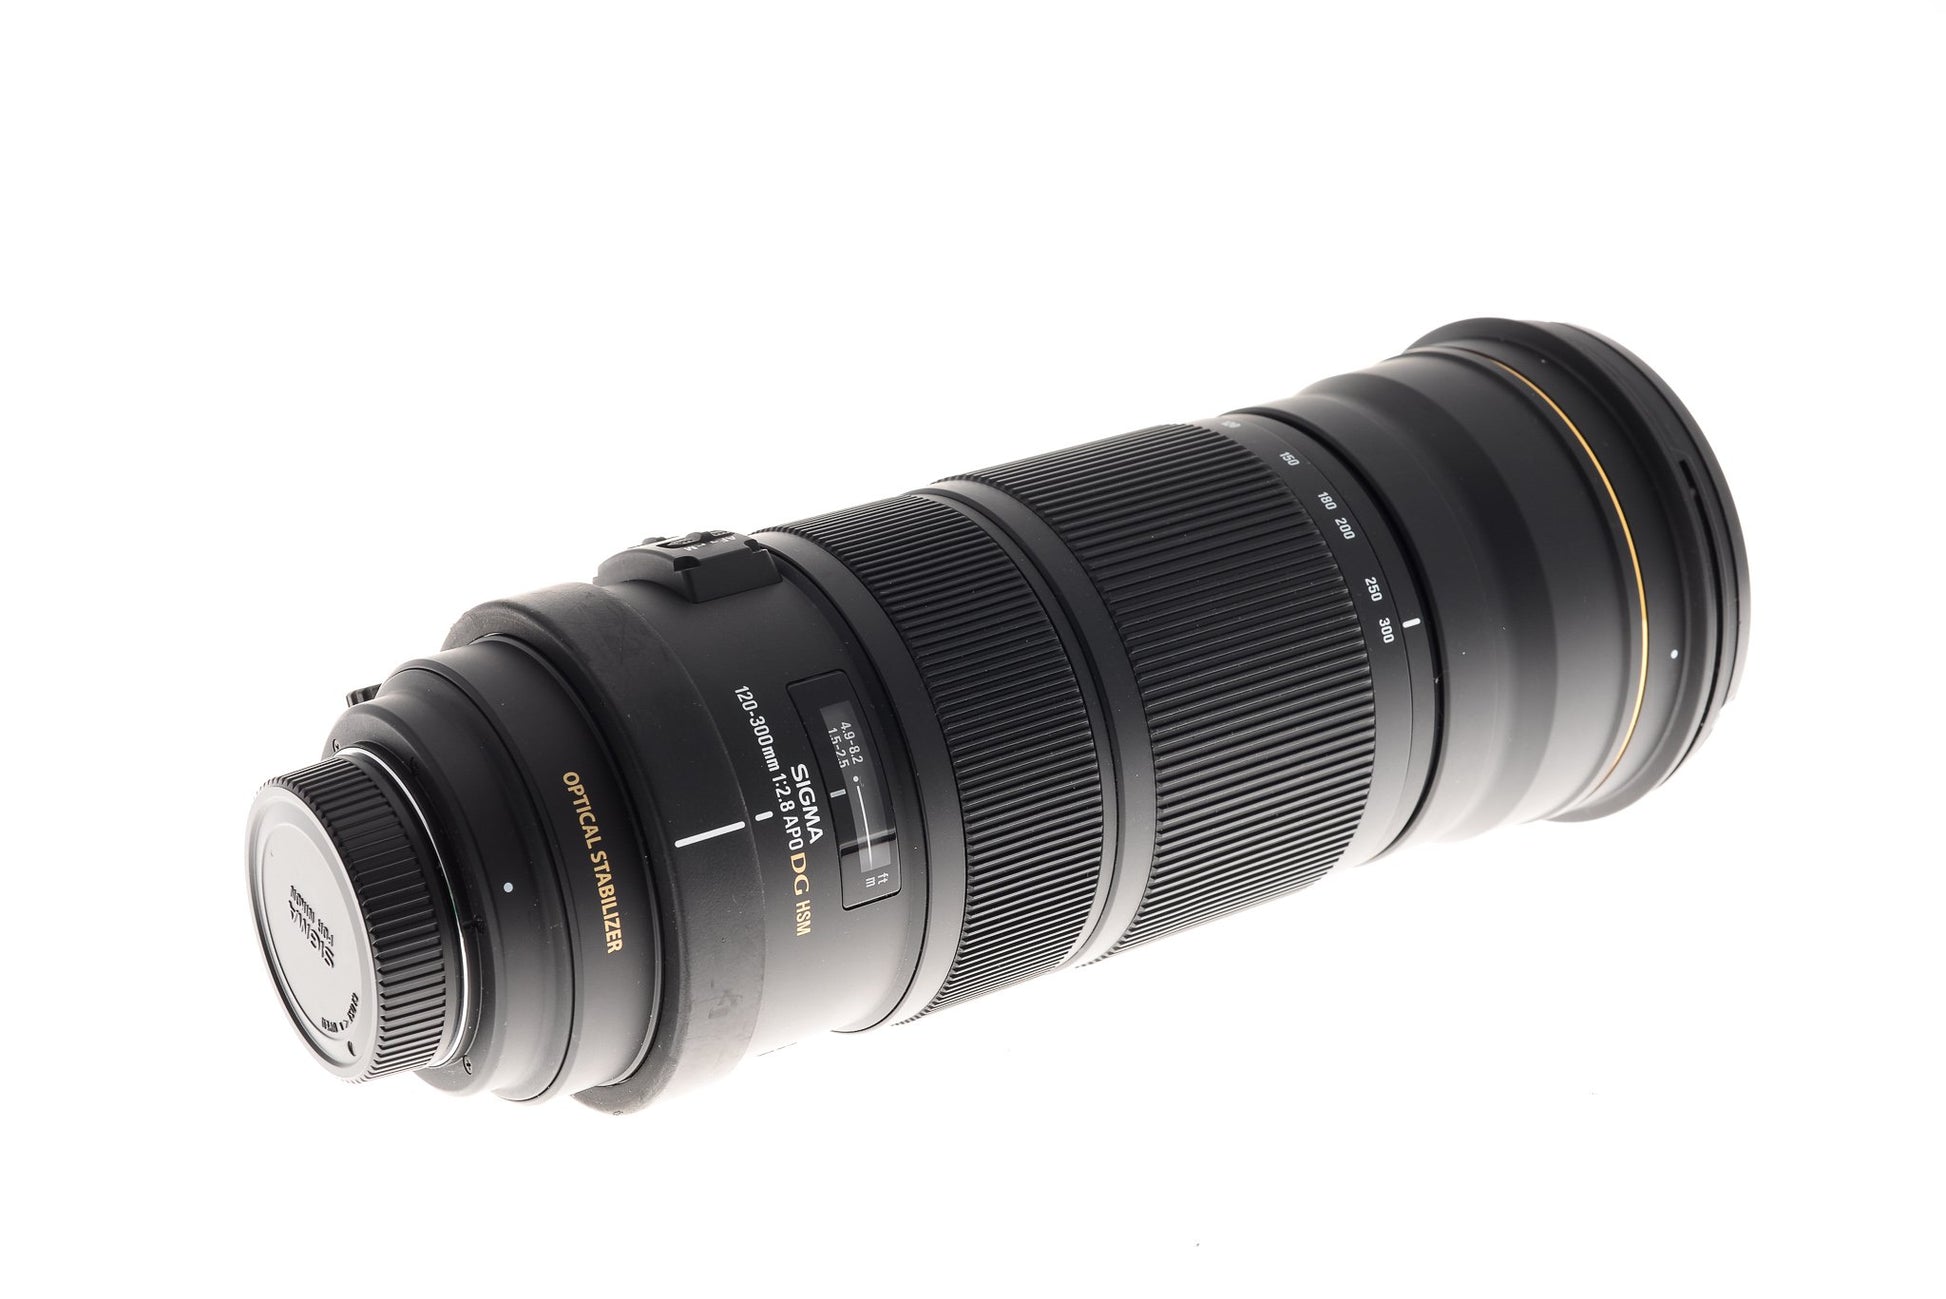 Sigma 120-300mm f2.8 EX OS APO DG HSM  - Lens